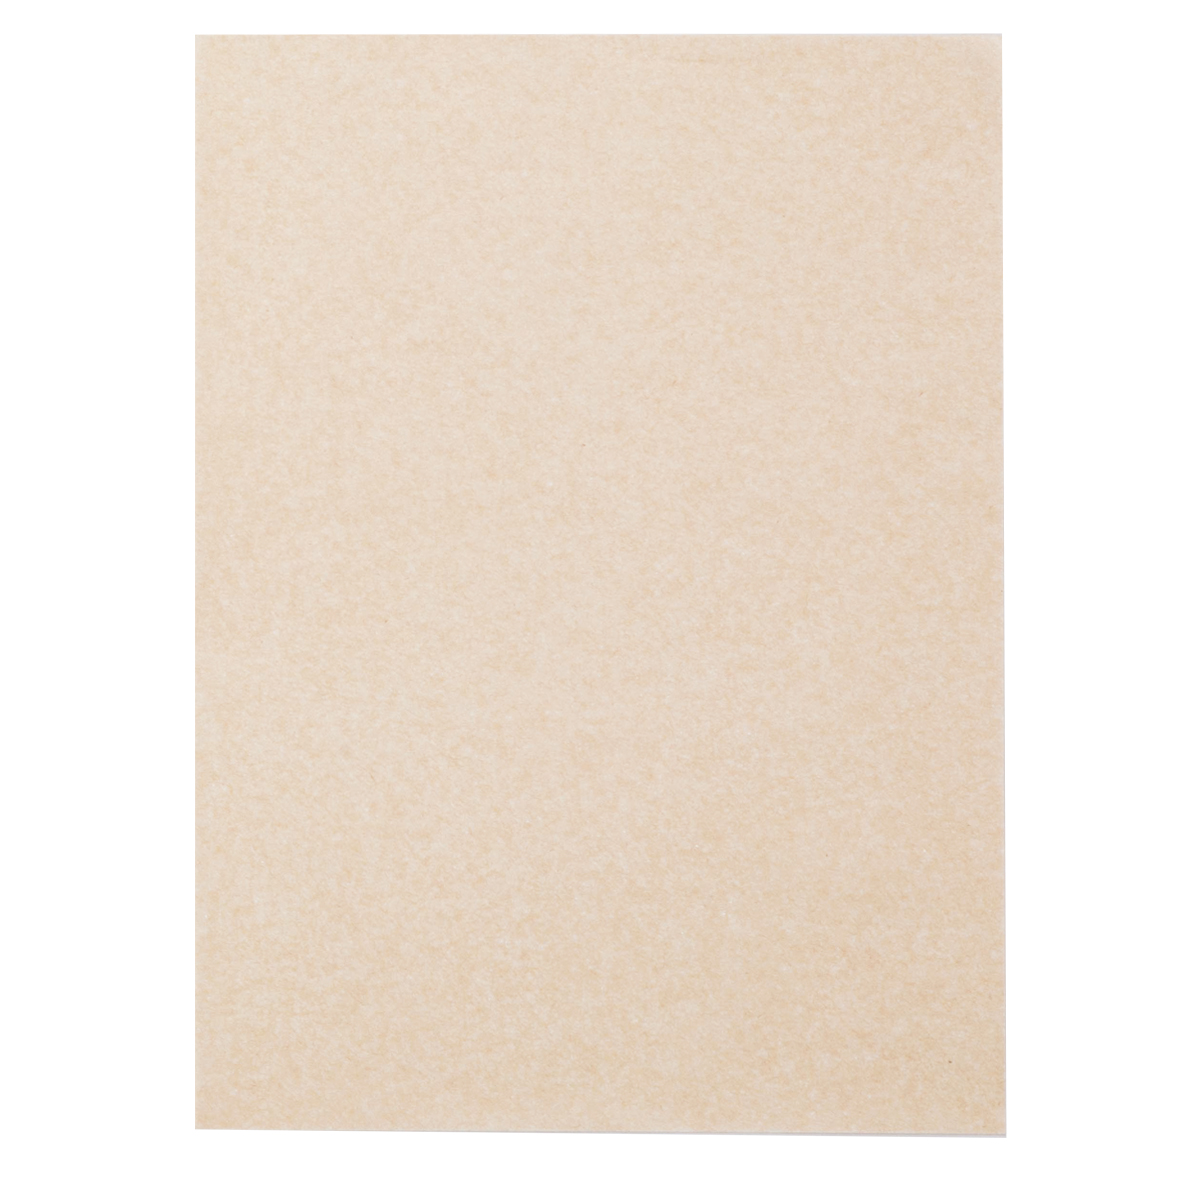 贈物 2021高い素材 人気の白タイプの転写紙です メール便可 ホワイトカーボン紙 10枚組 300×220mm 白 転写紙 buerostuhl-ulm.de buerostuhl-ulm.de